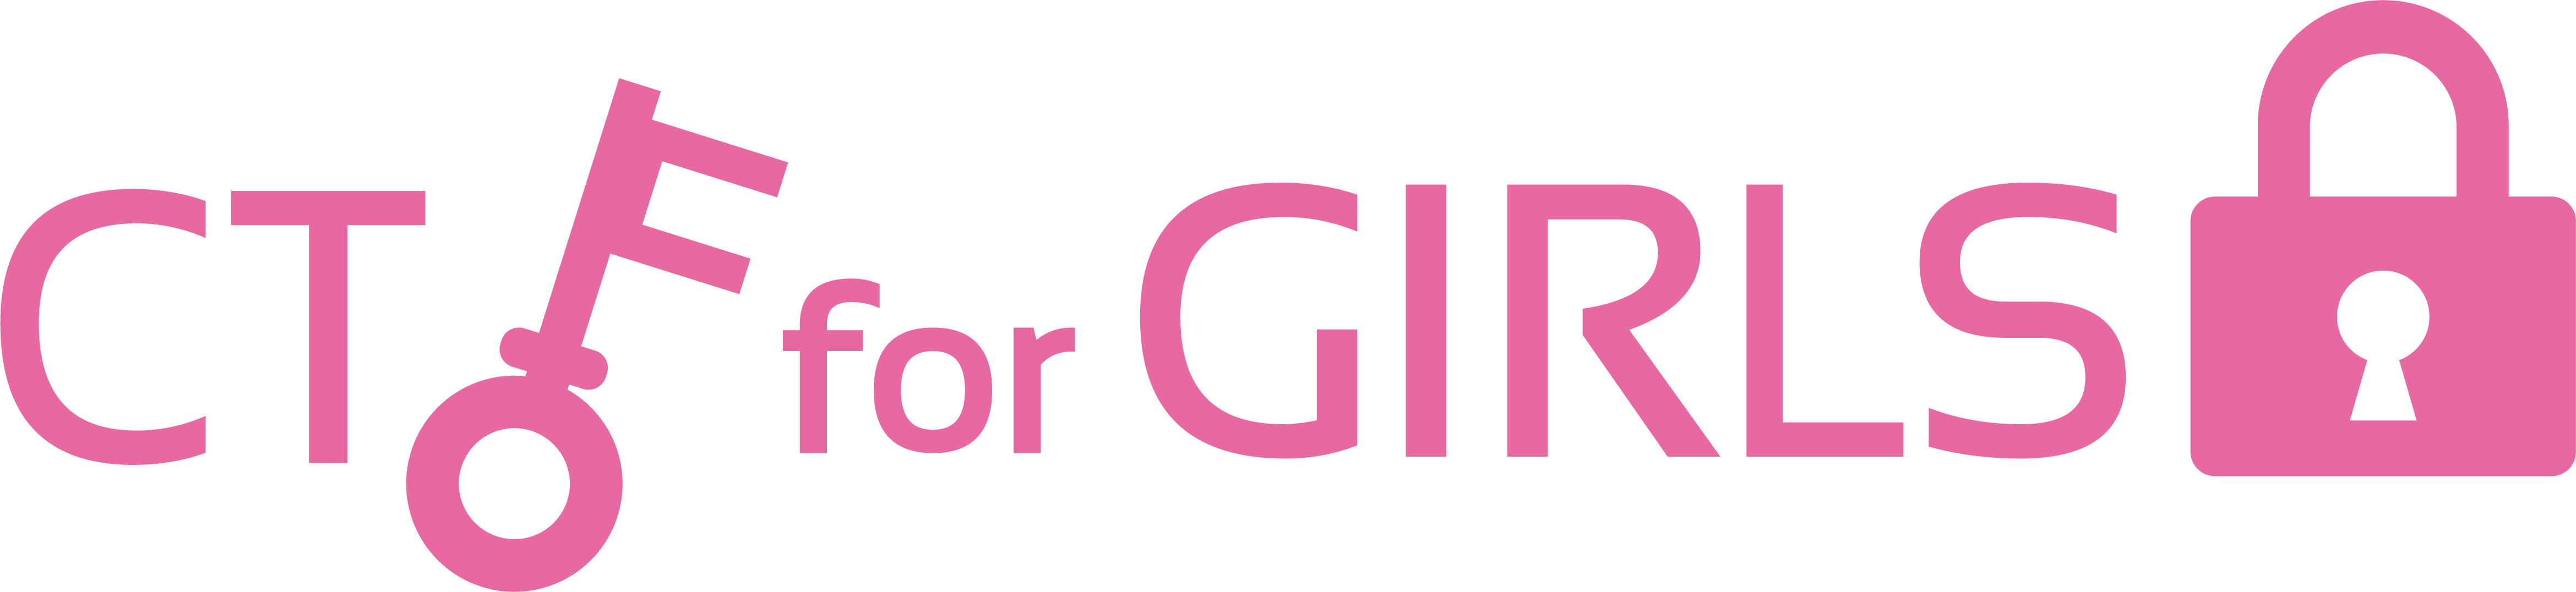 CTF4GIRLS_logo.png